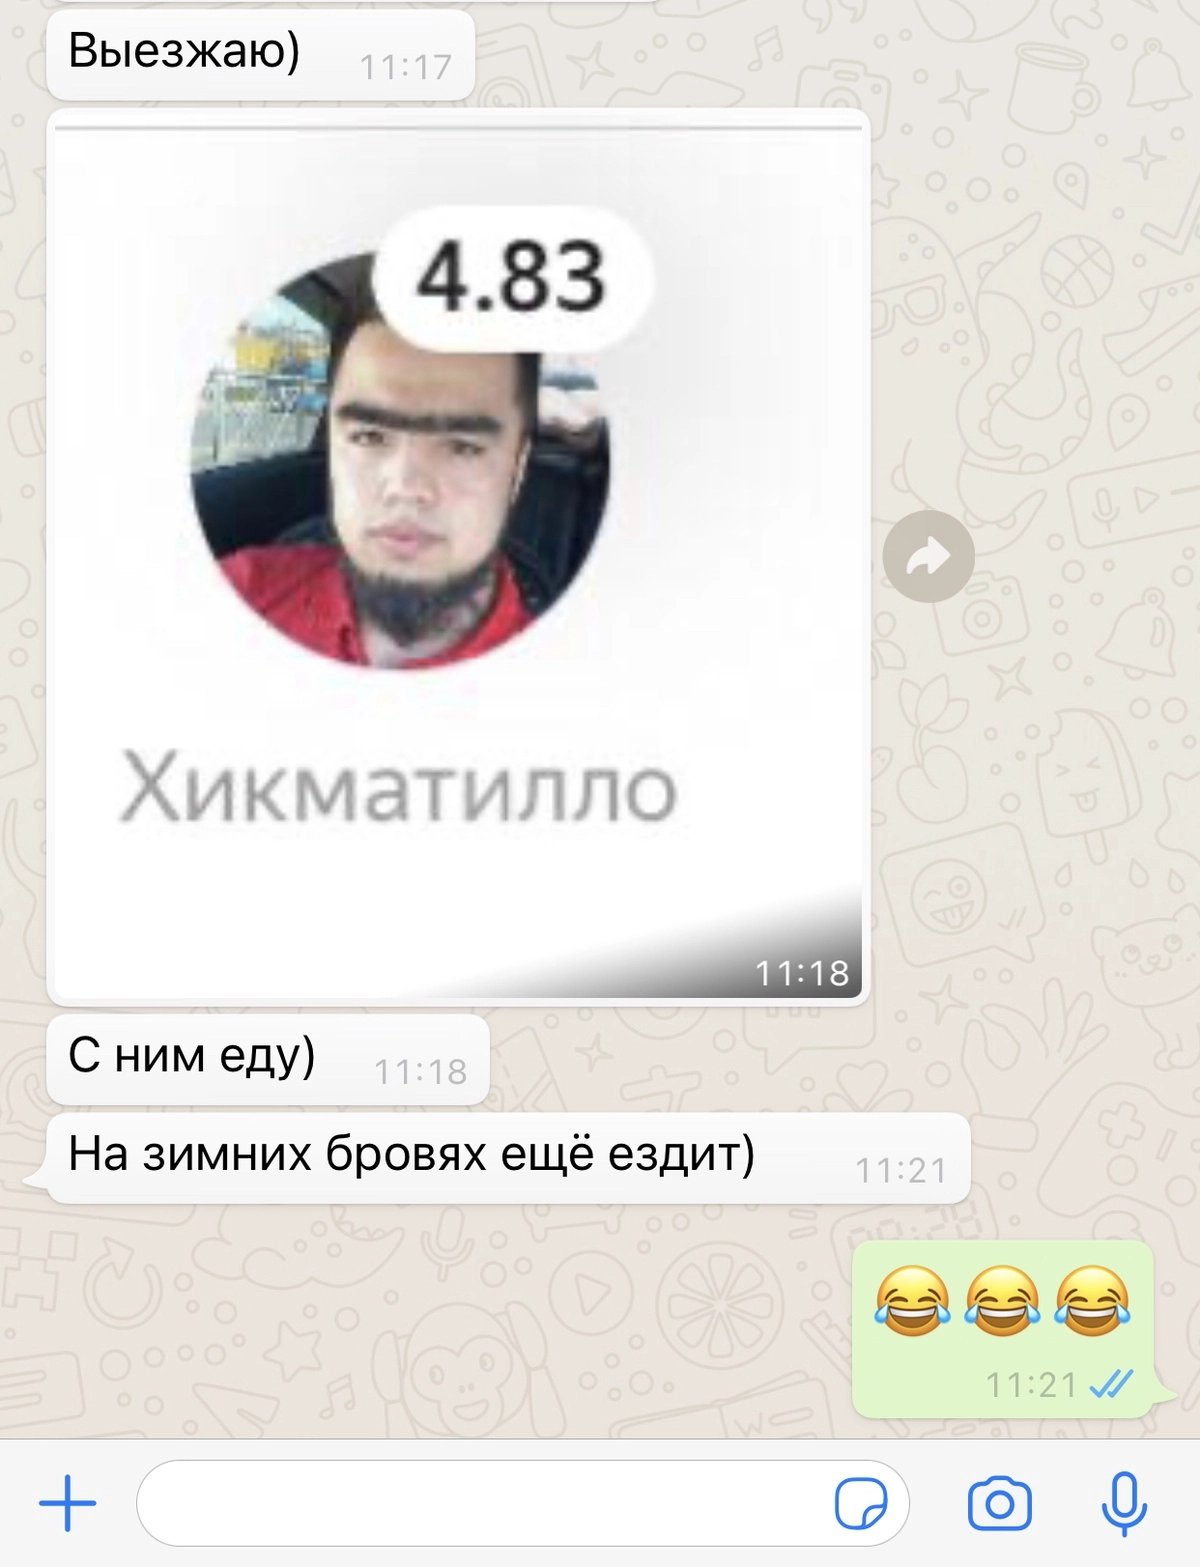 Стильные водители Яндекса. 